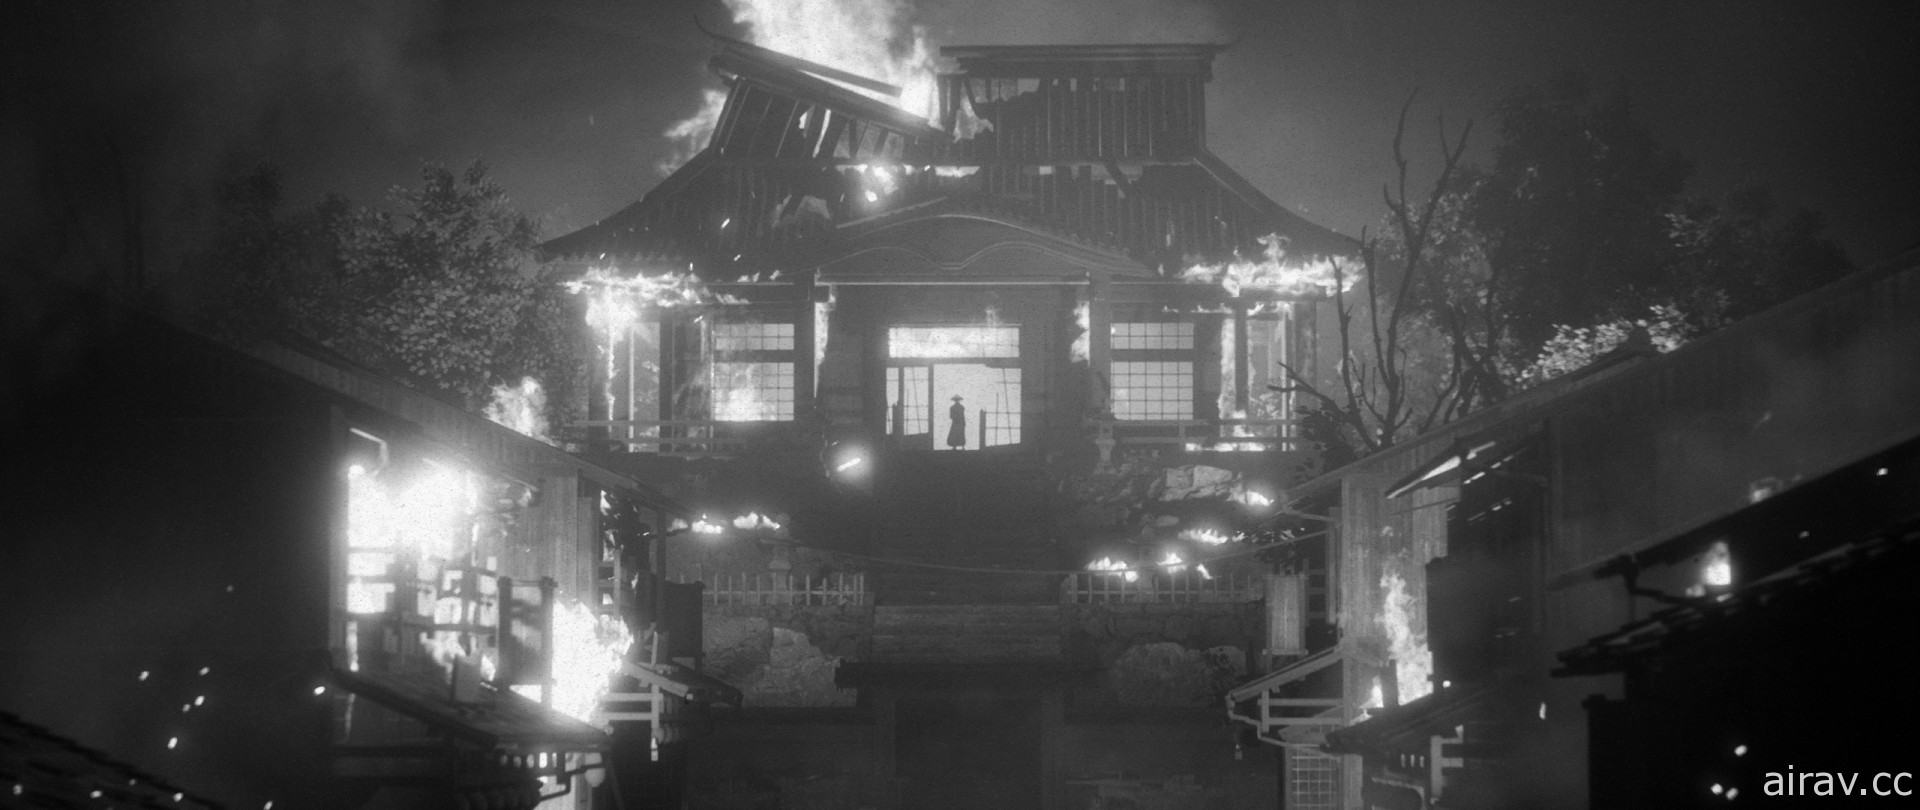 黑白武士電影動作遊戲《幽冥旅程》釋出實機預告片 展現封建時期的日本風情